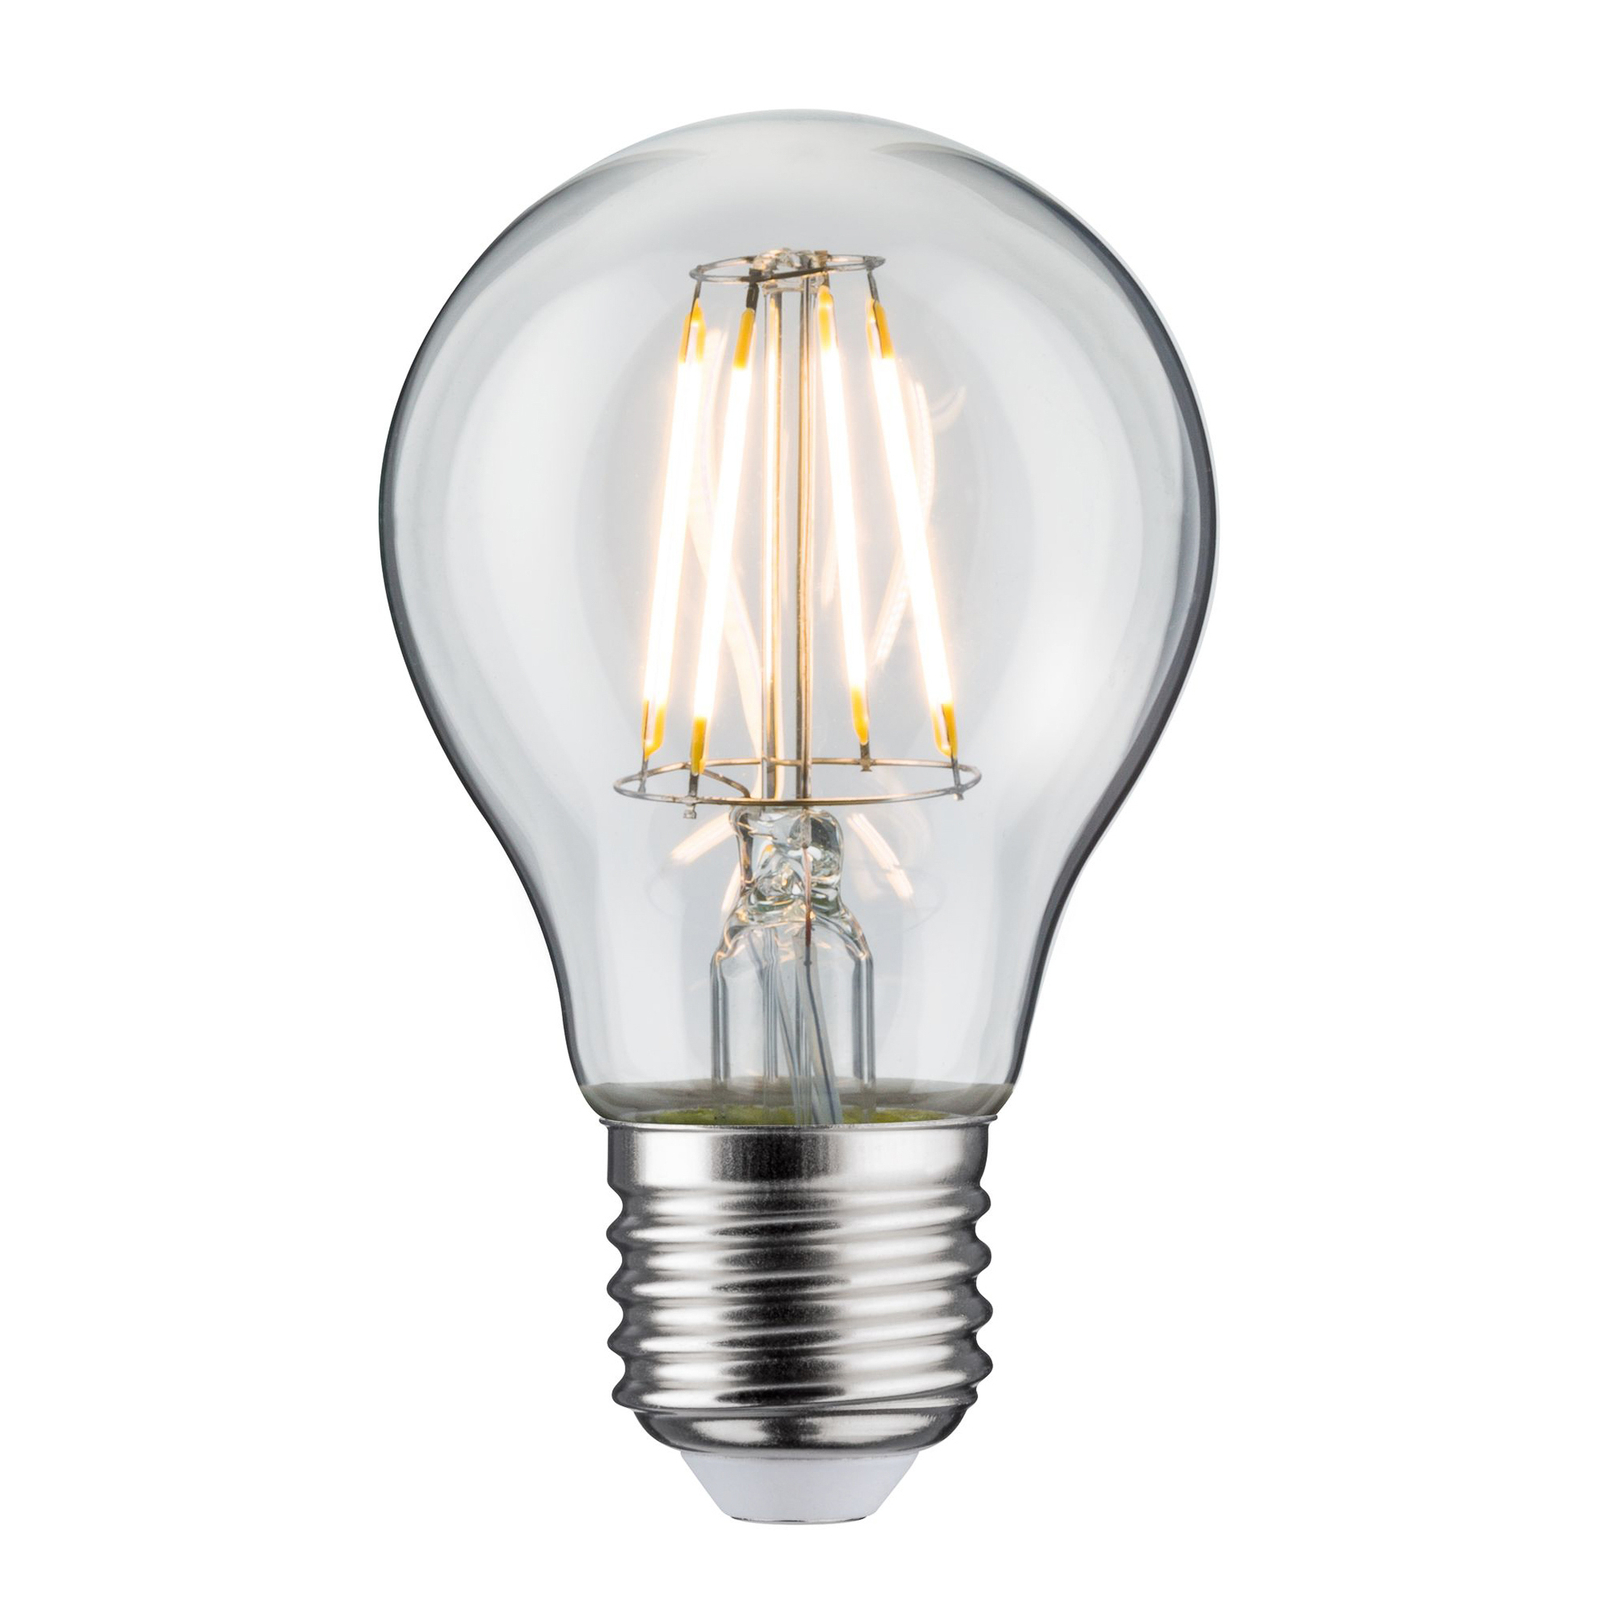 Paulmann LED bulb E27 5 W 2,700 K filament 2-pack